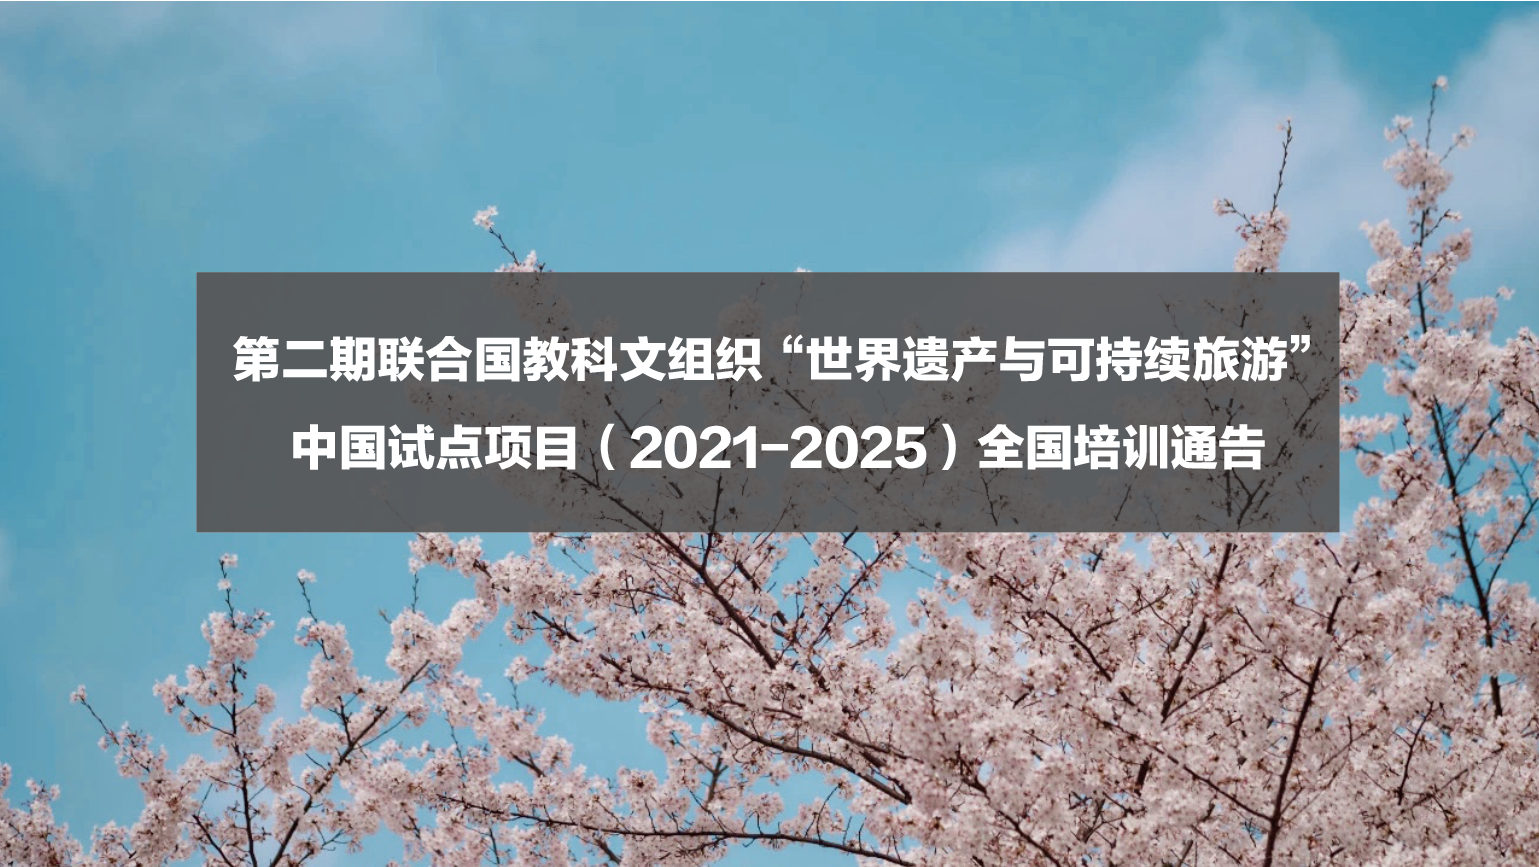 第二期联合国教科文组织“世界遗产与可持续旅游” 中国试点项目（2021-2025）培训通告